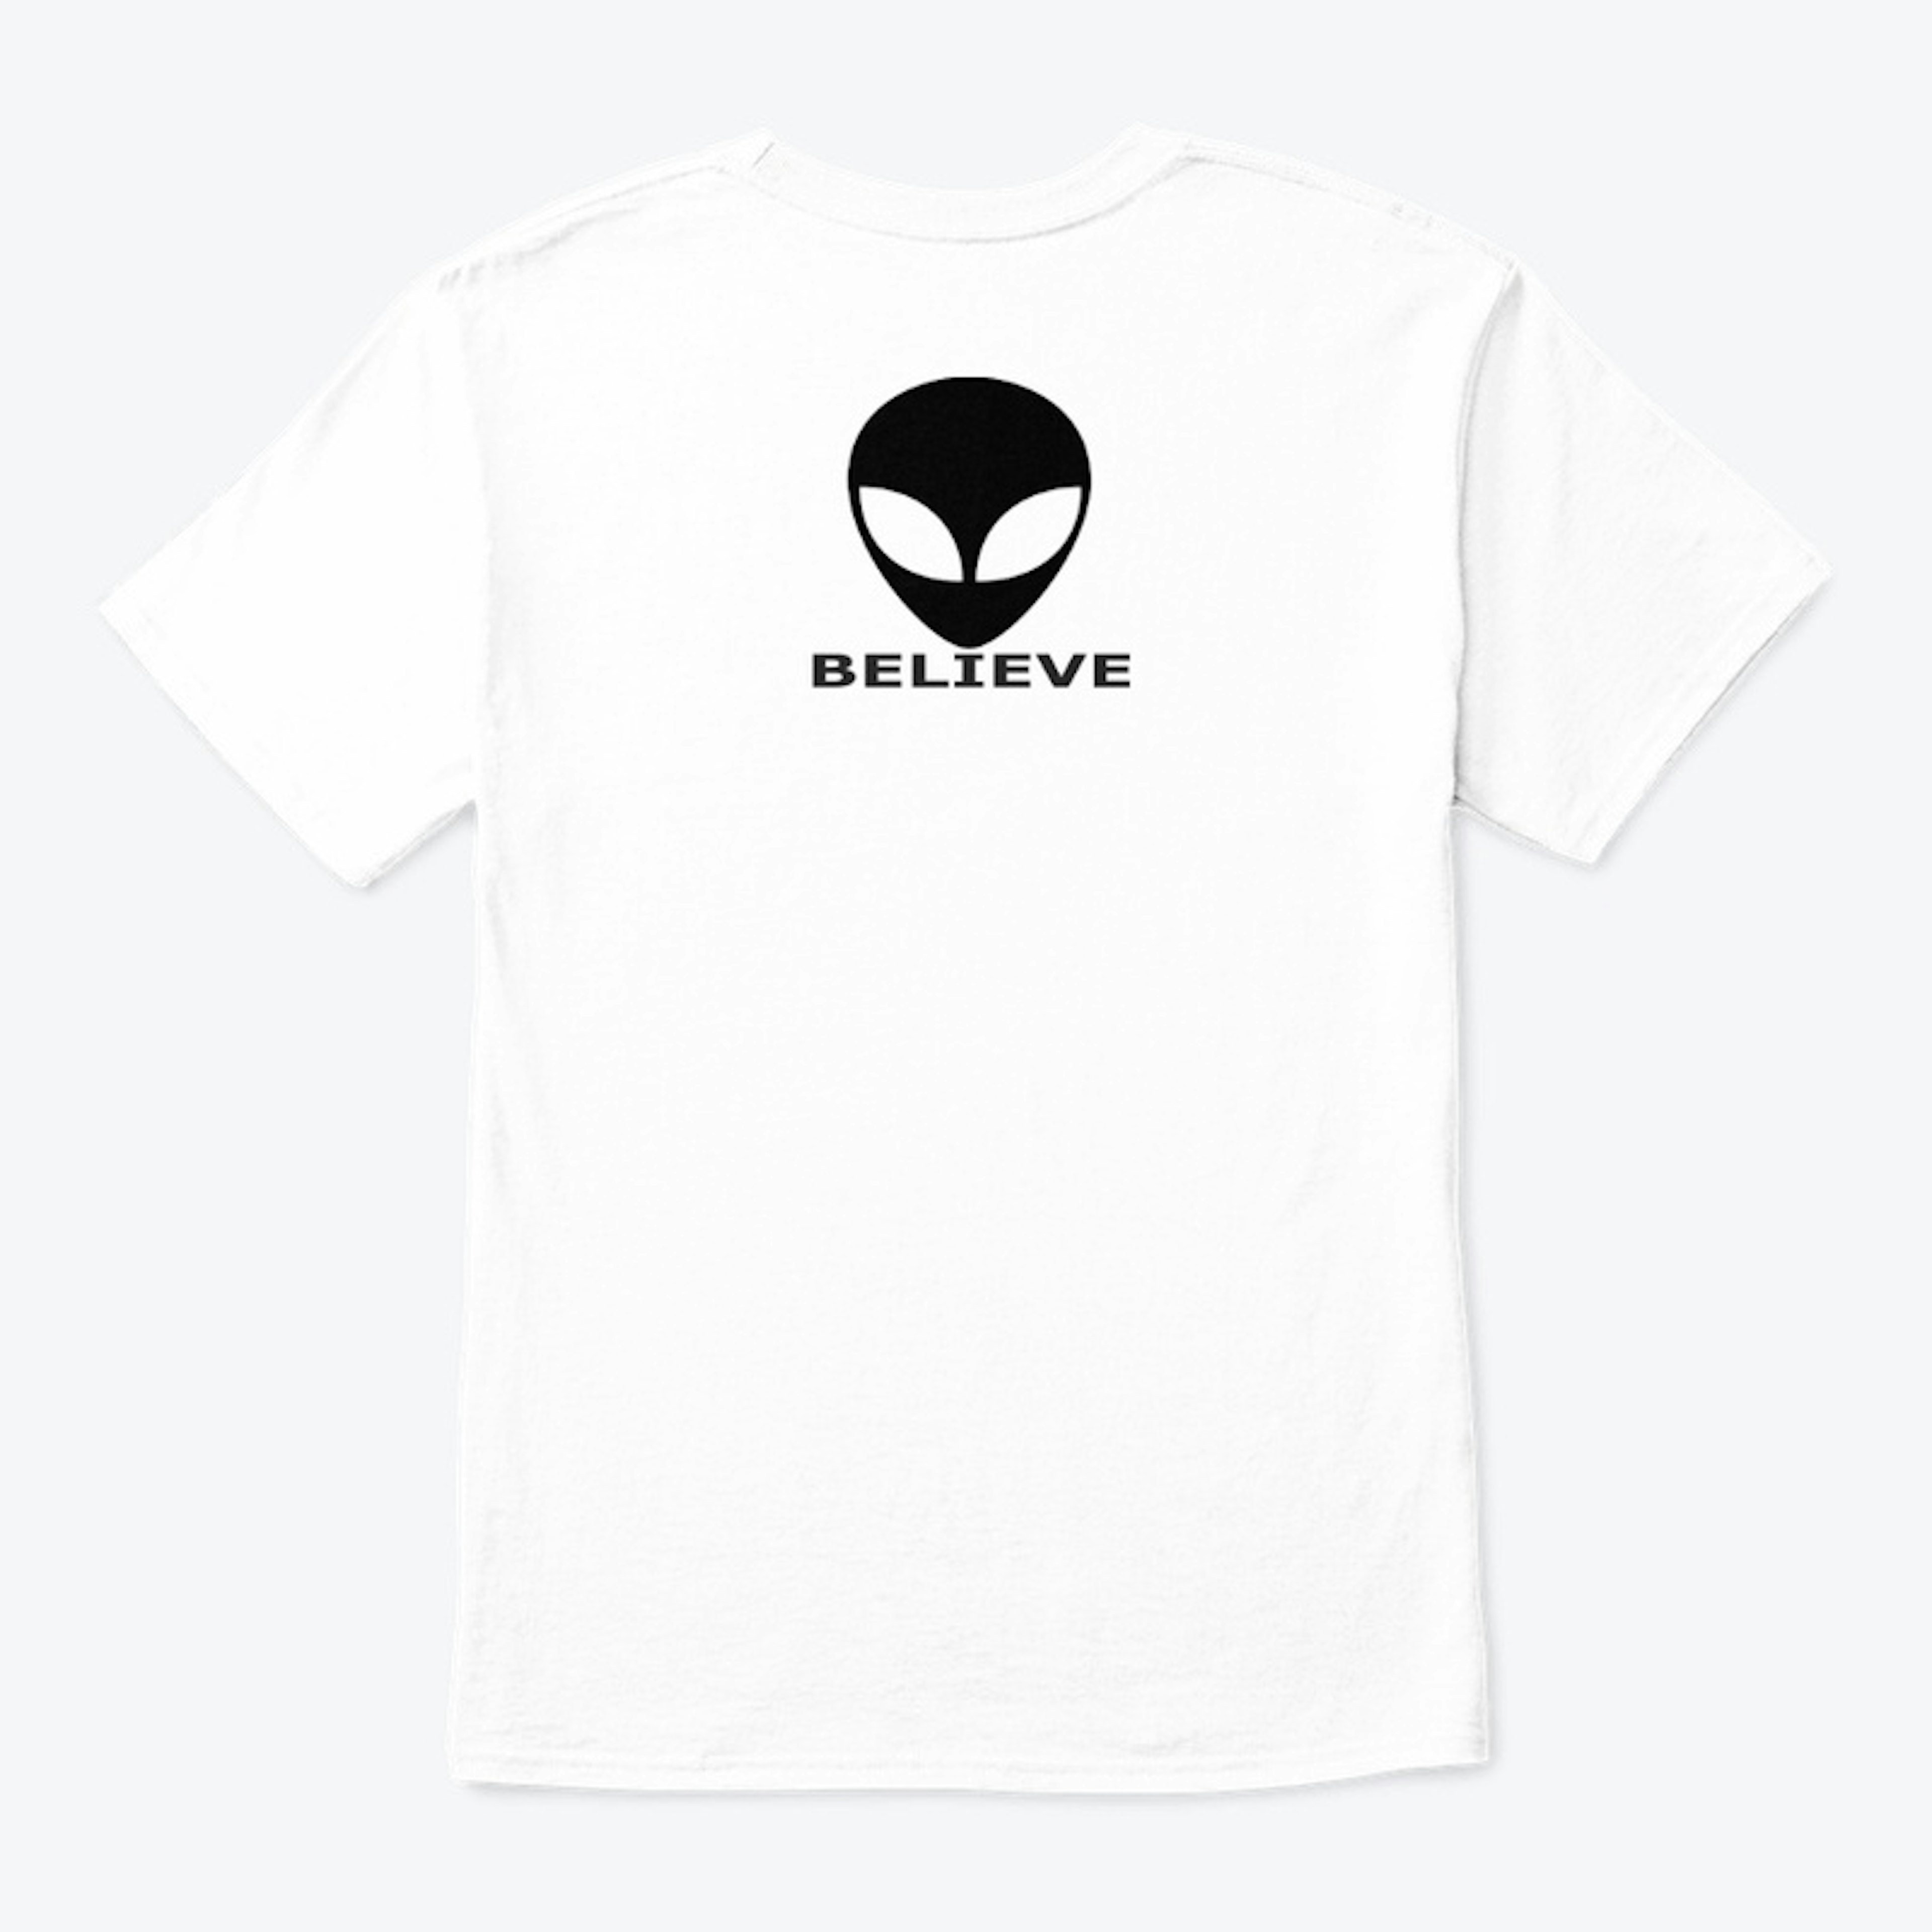 Alien Believe